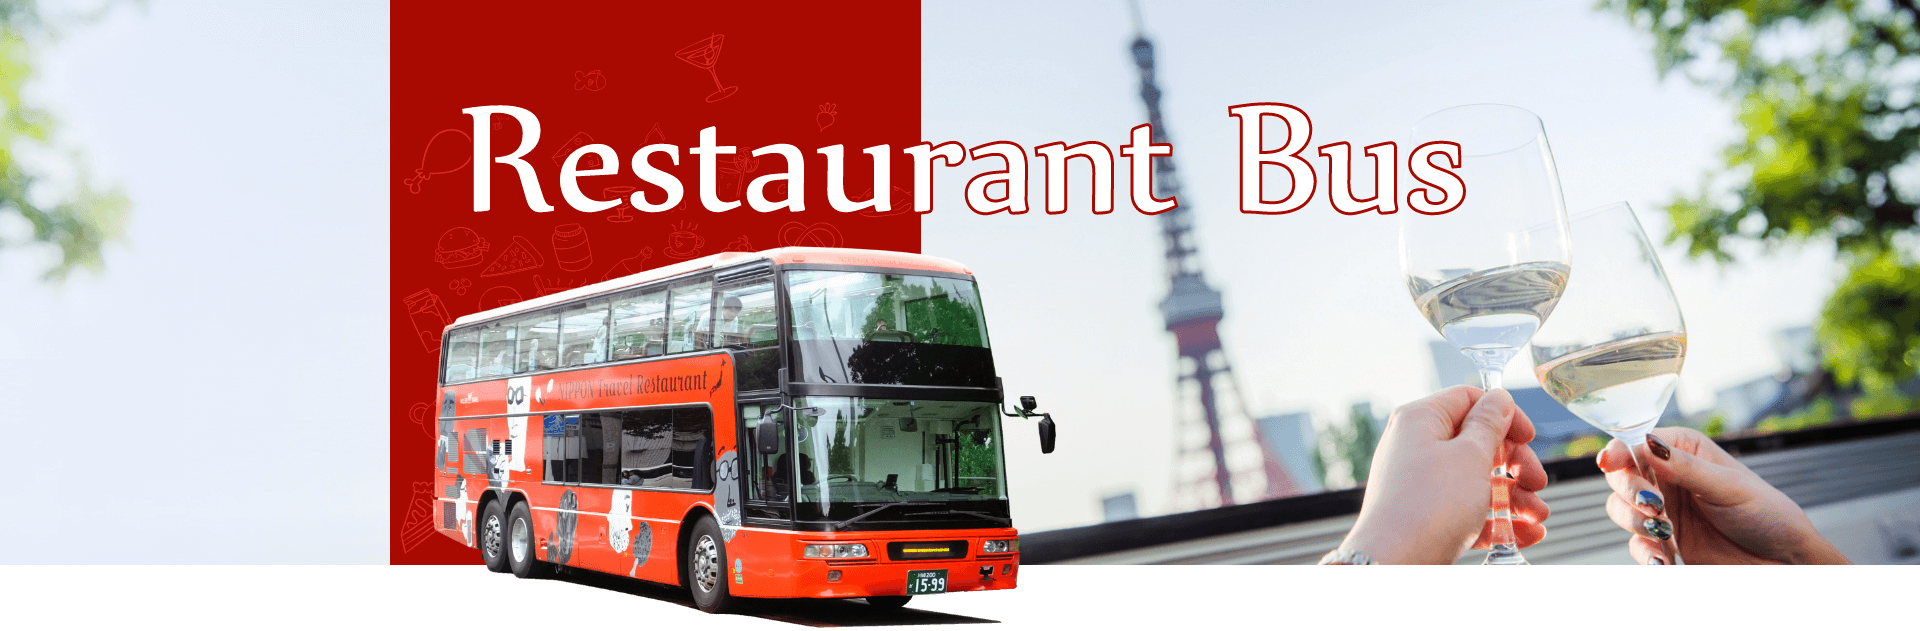 Restaurant Bus